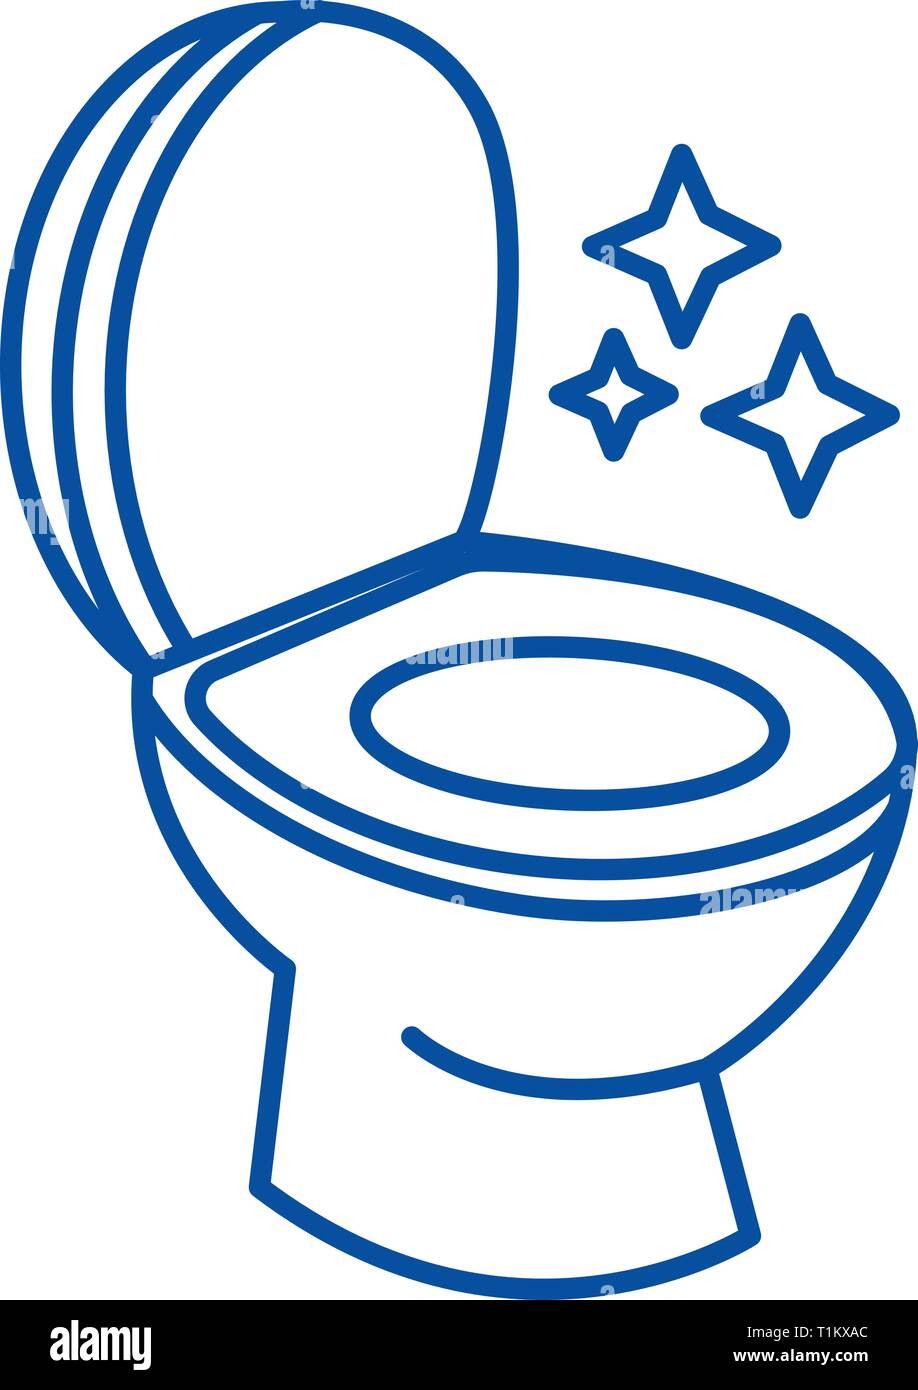 Toilettes propres, l'icône de la ligne du service de nettoyage concept.  Propre service de nettoyage de toilettes, télévision, signe, symbole  vecteur illustration contour Image Vectorielle Stock - Alamy